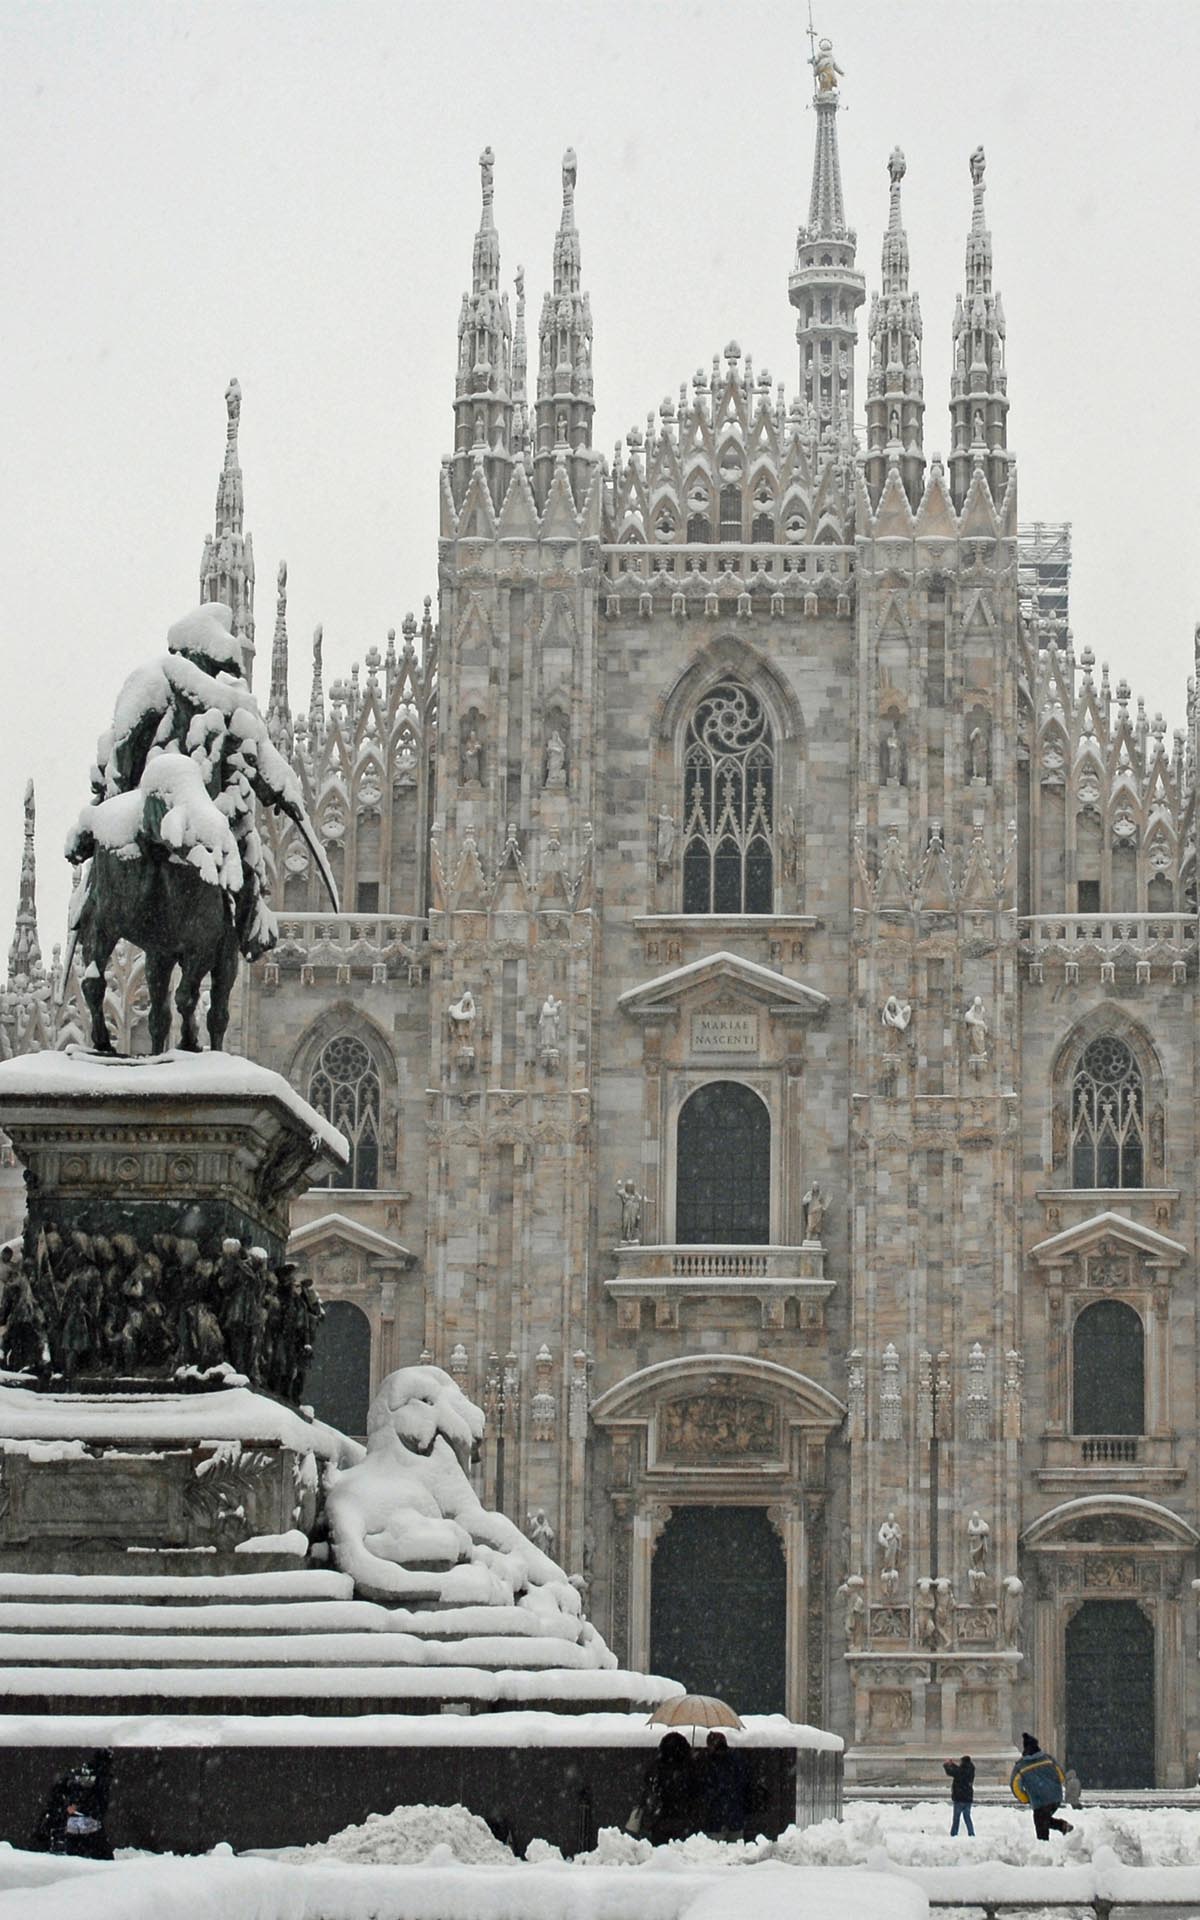 piazza-del-duomo-in-the-snow-winter-milan